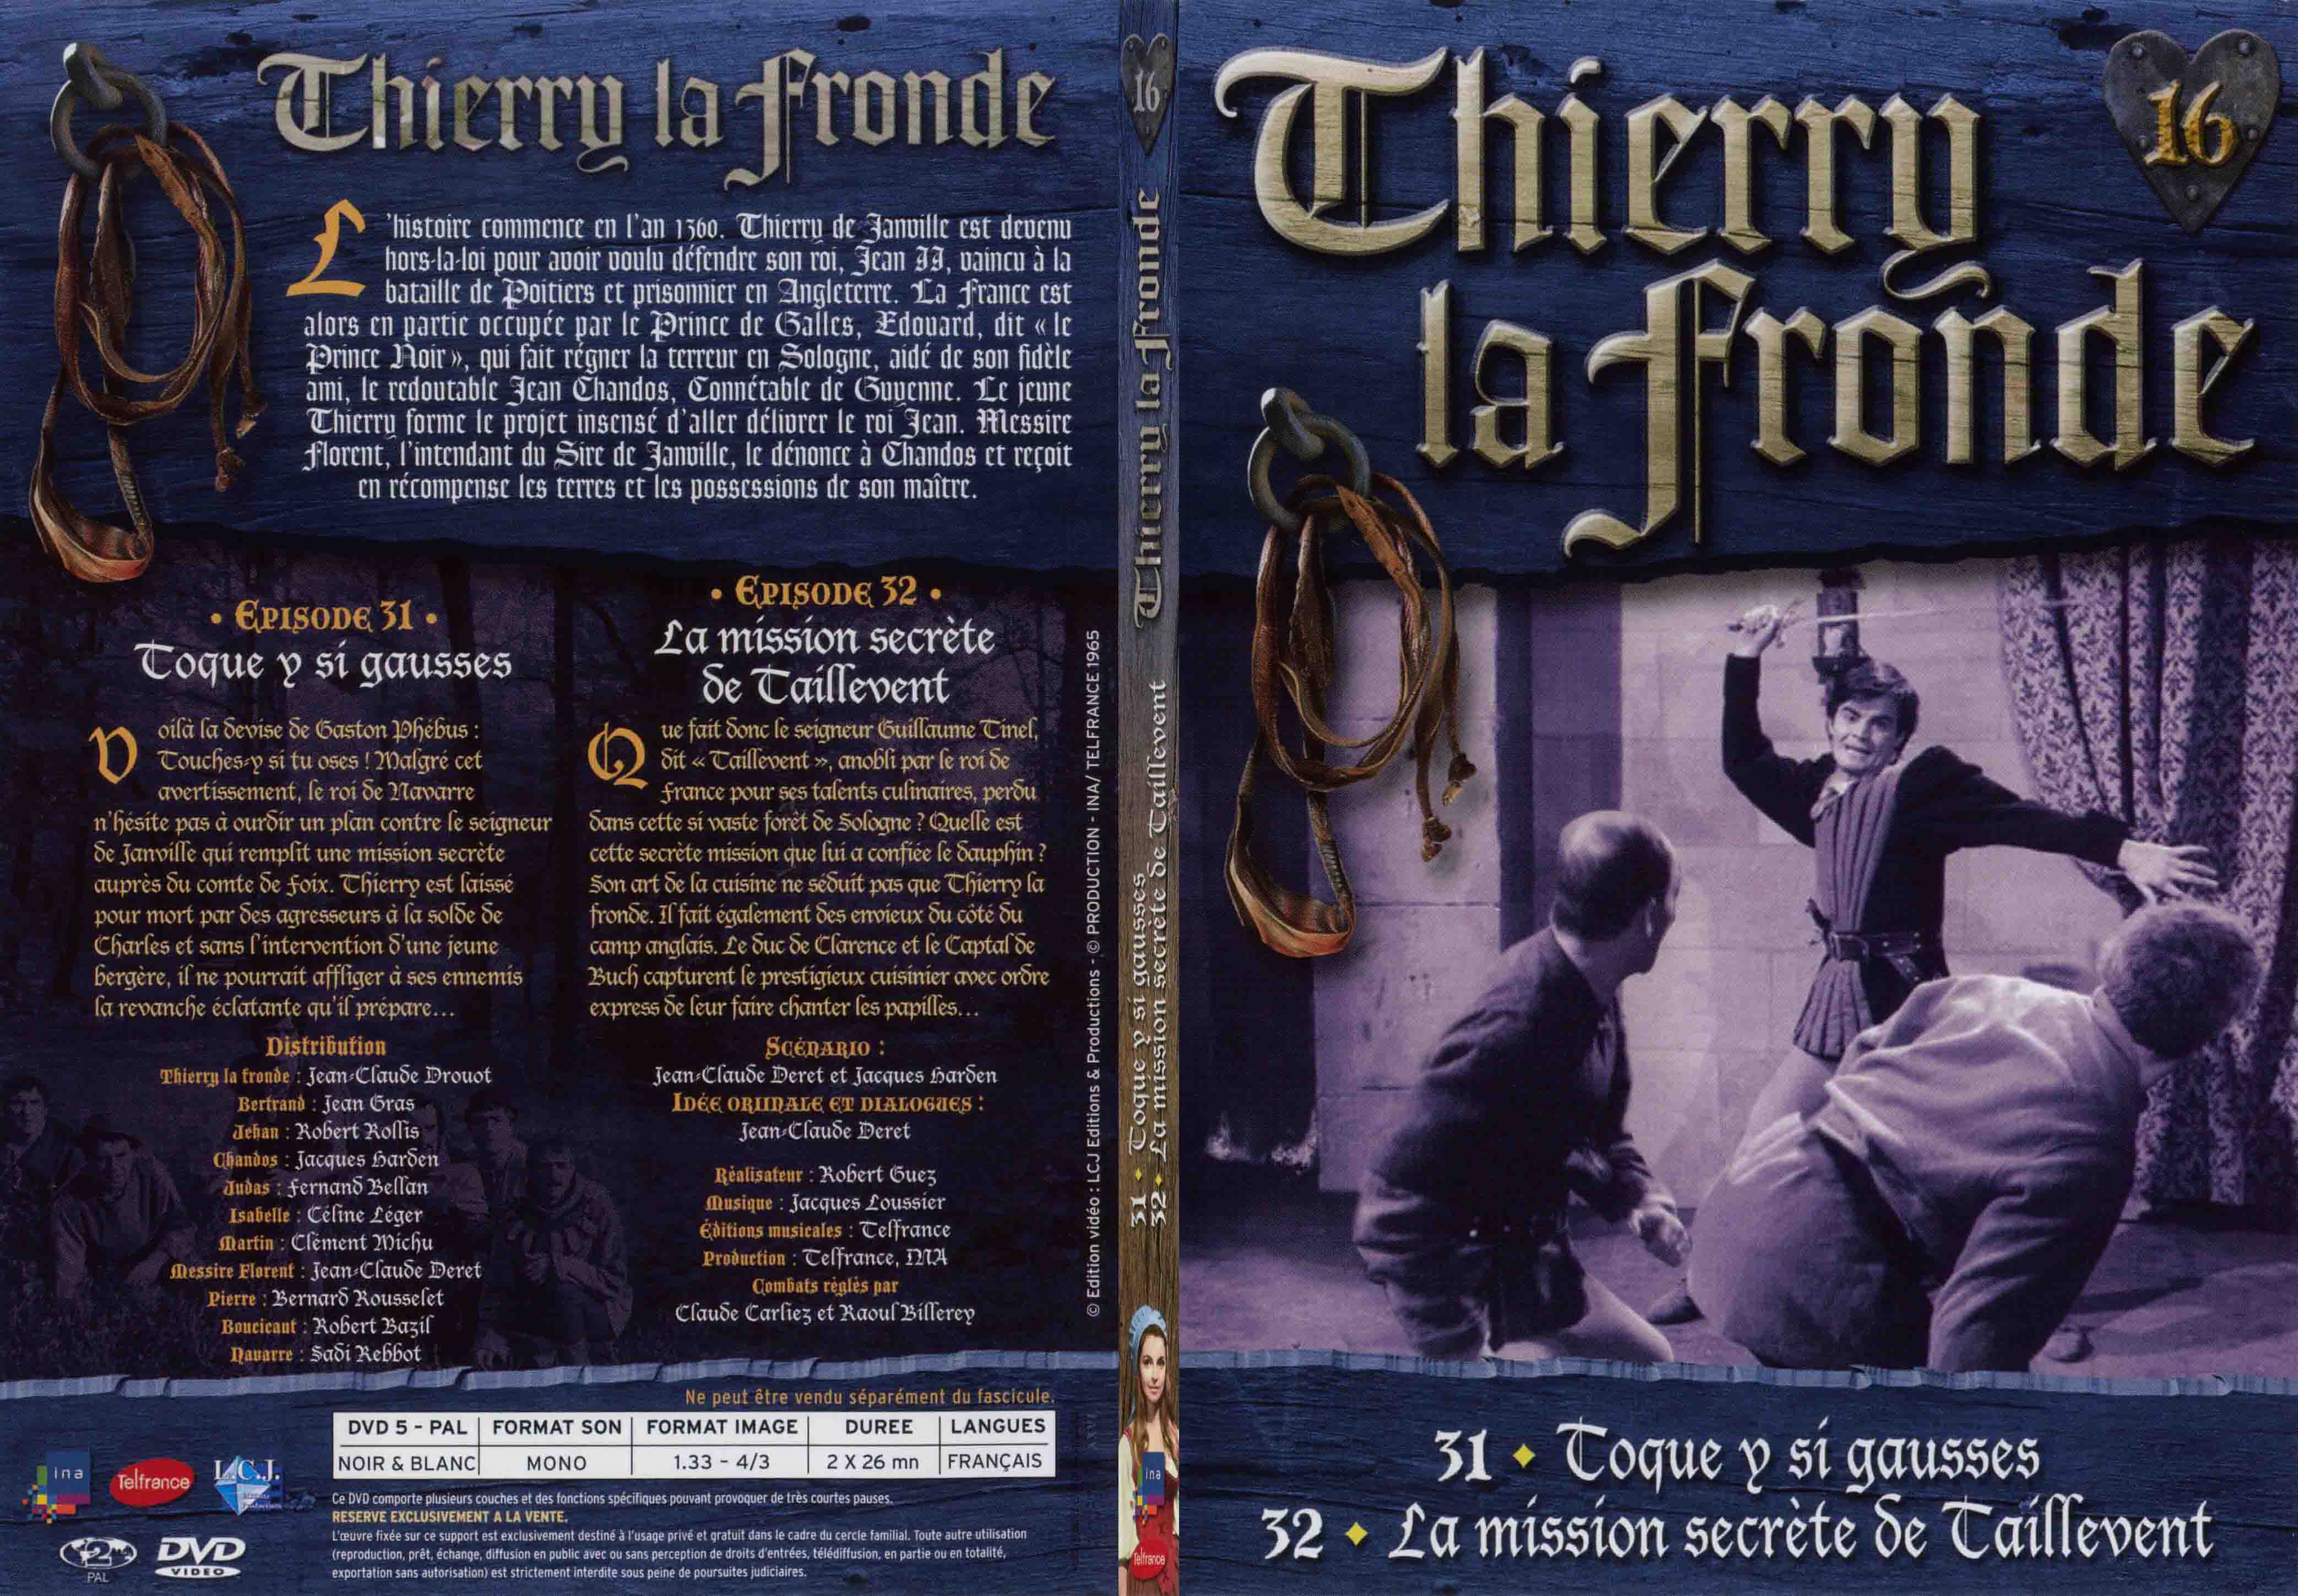 Jaquette DVD Thierry la Fronde vol 16 - SLIM